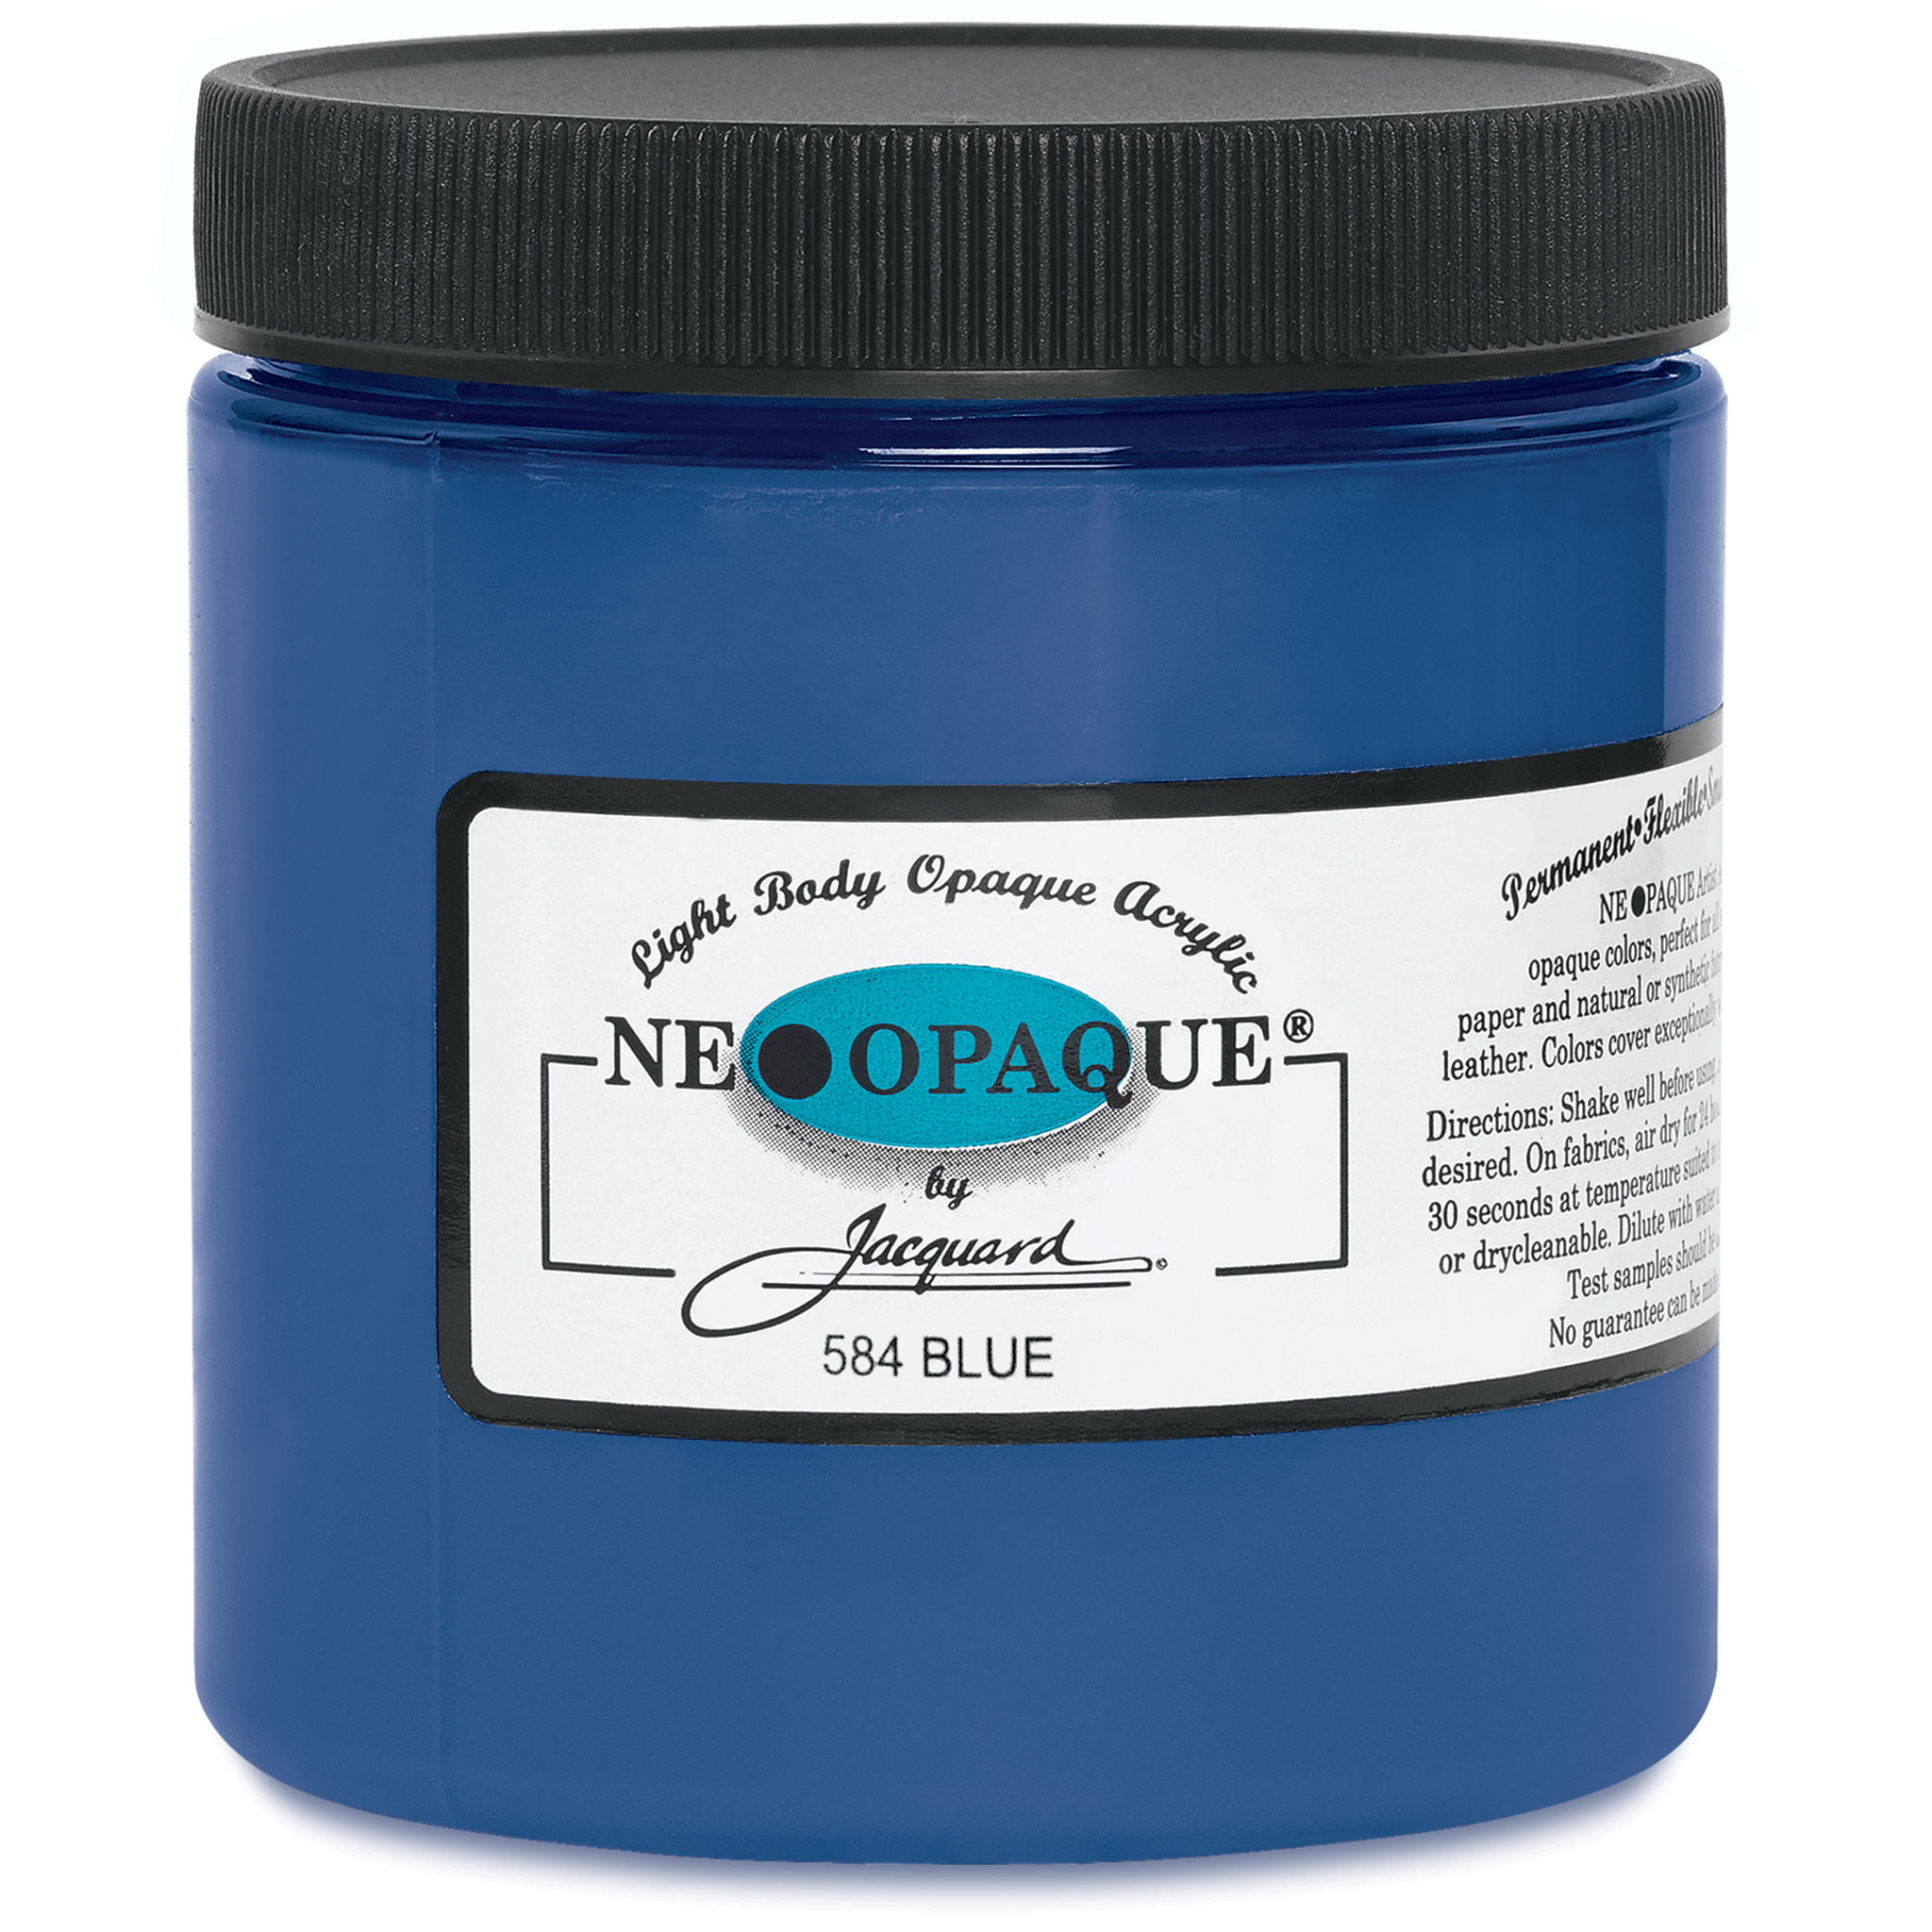 Jacquard Neopaque (Pintura Acrílica) 66 ml - Disponible en 21 Colores -  Textiles - Pinturas - Pinturas & Pinceles